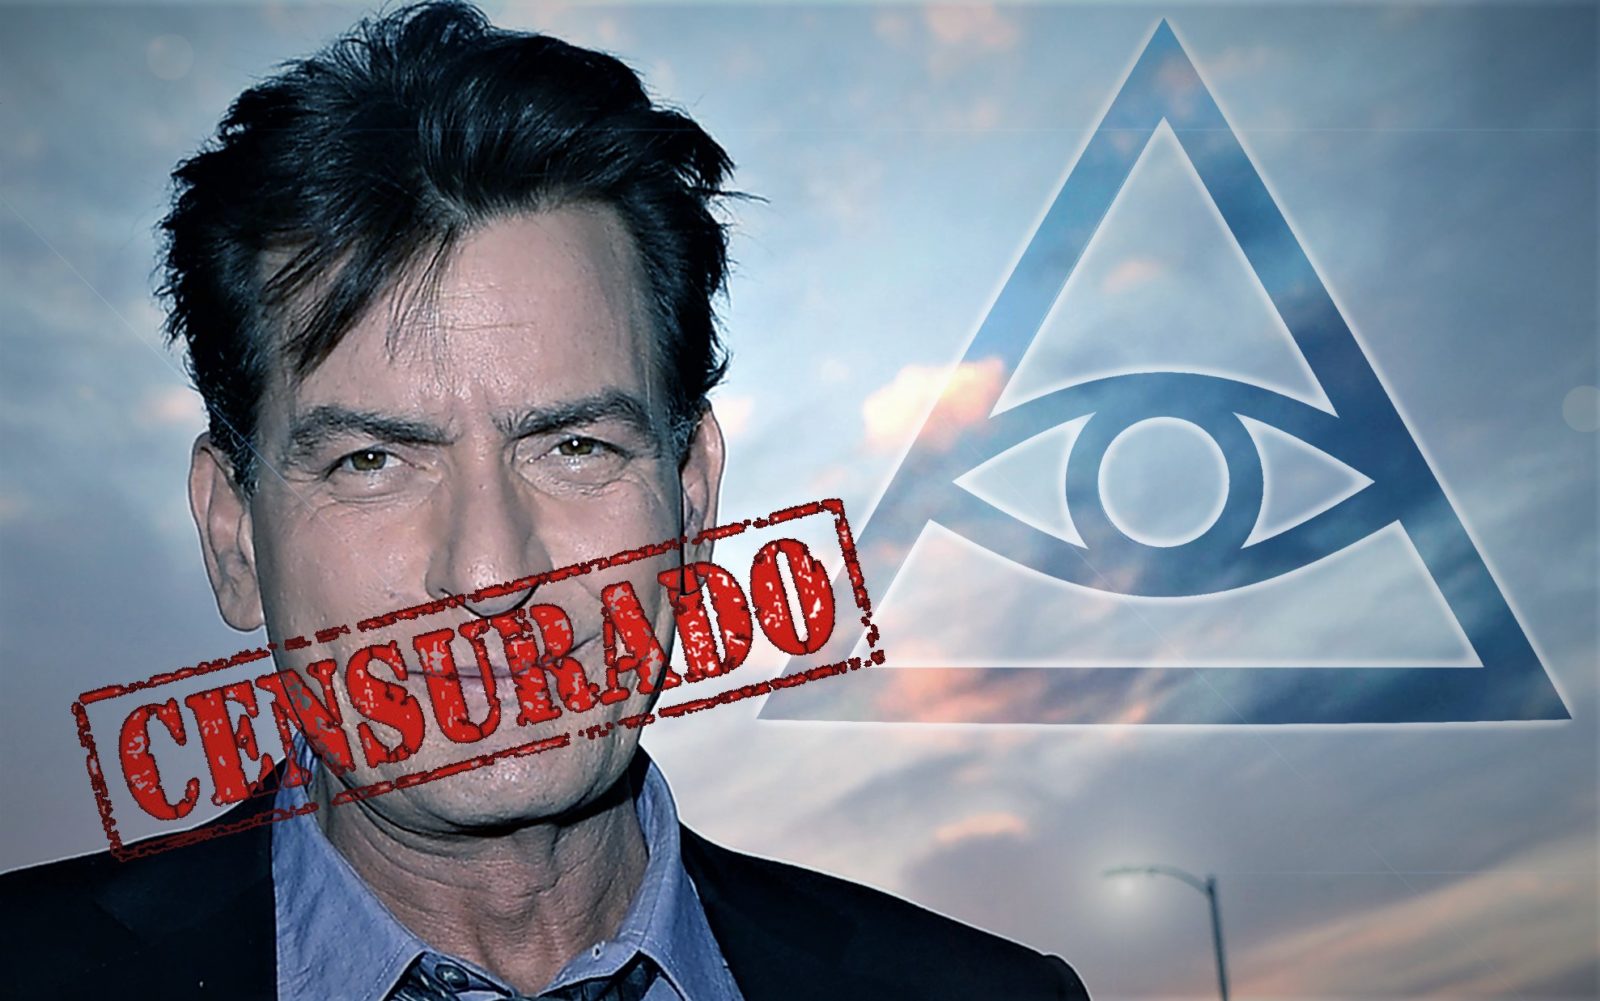 Charlie Sheen: La Élite Illuminati Esconde la Cura de muchas Enfermedades (Video)